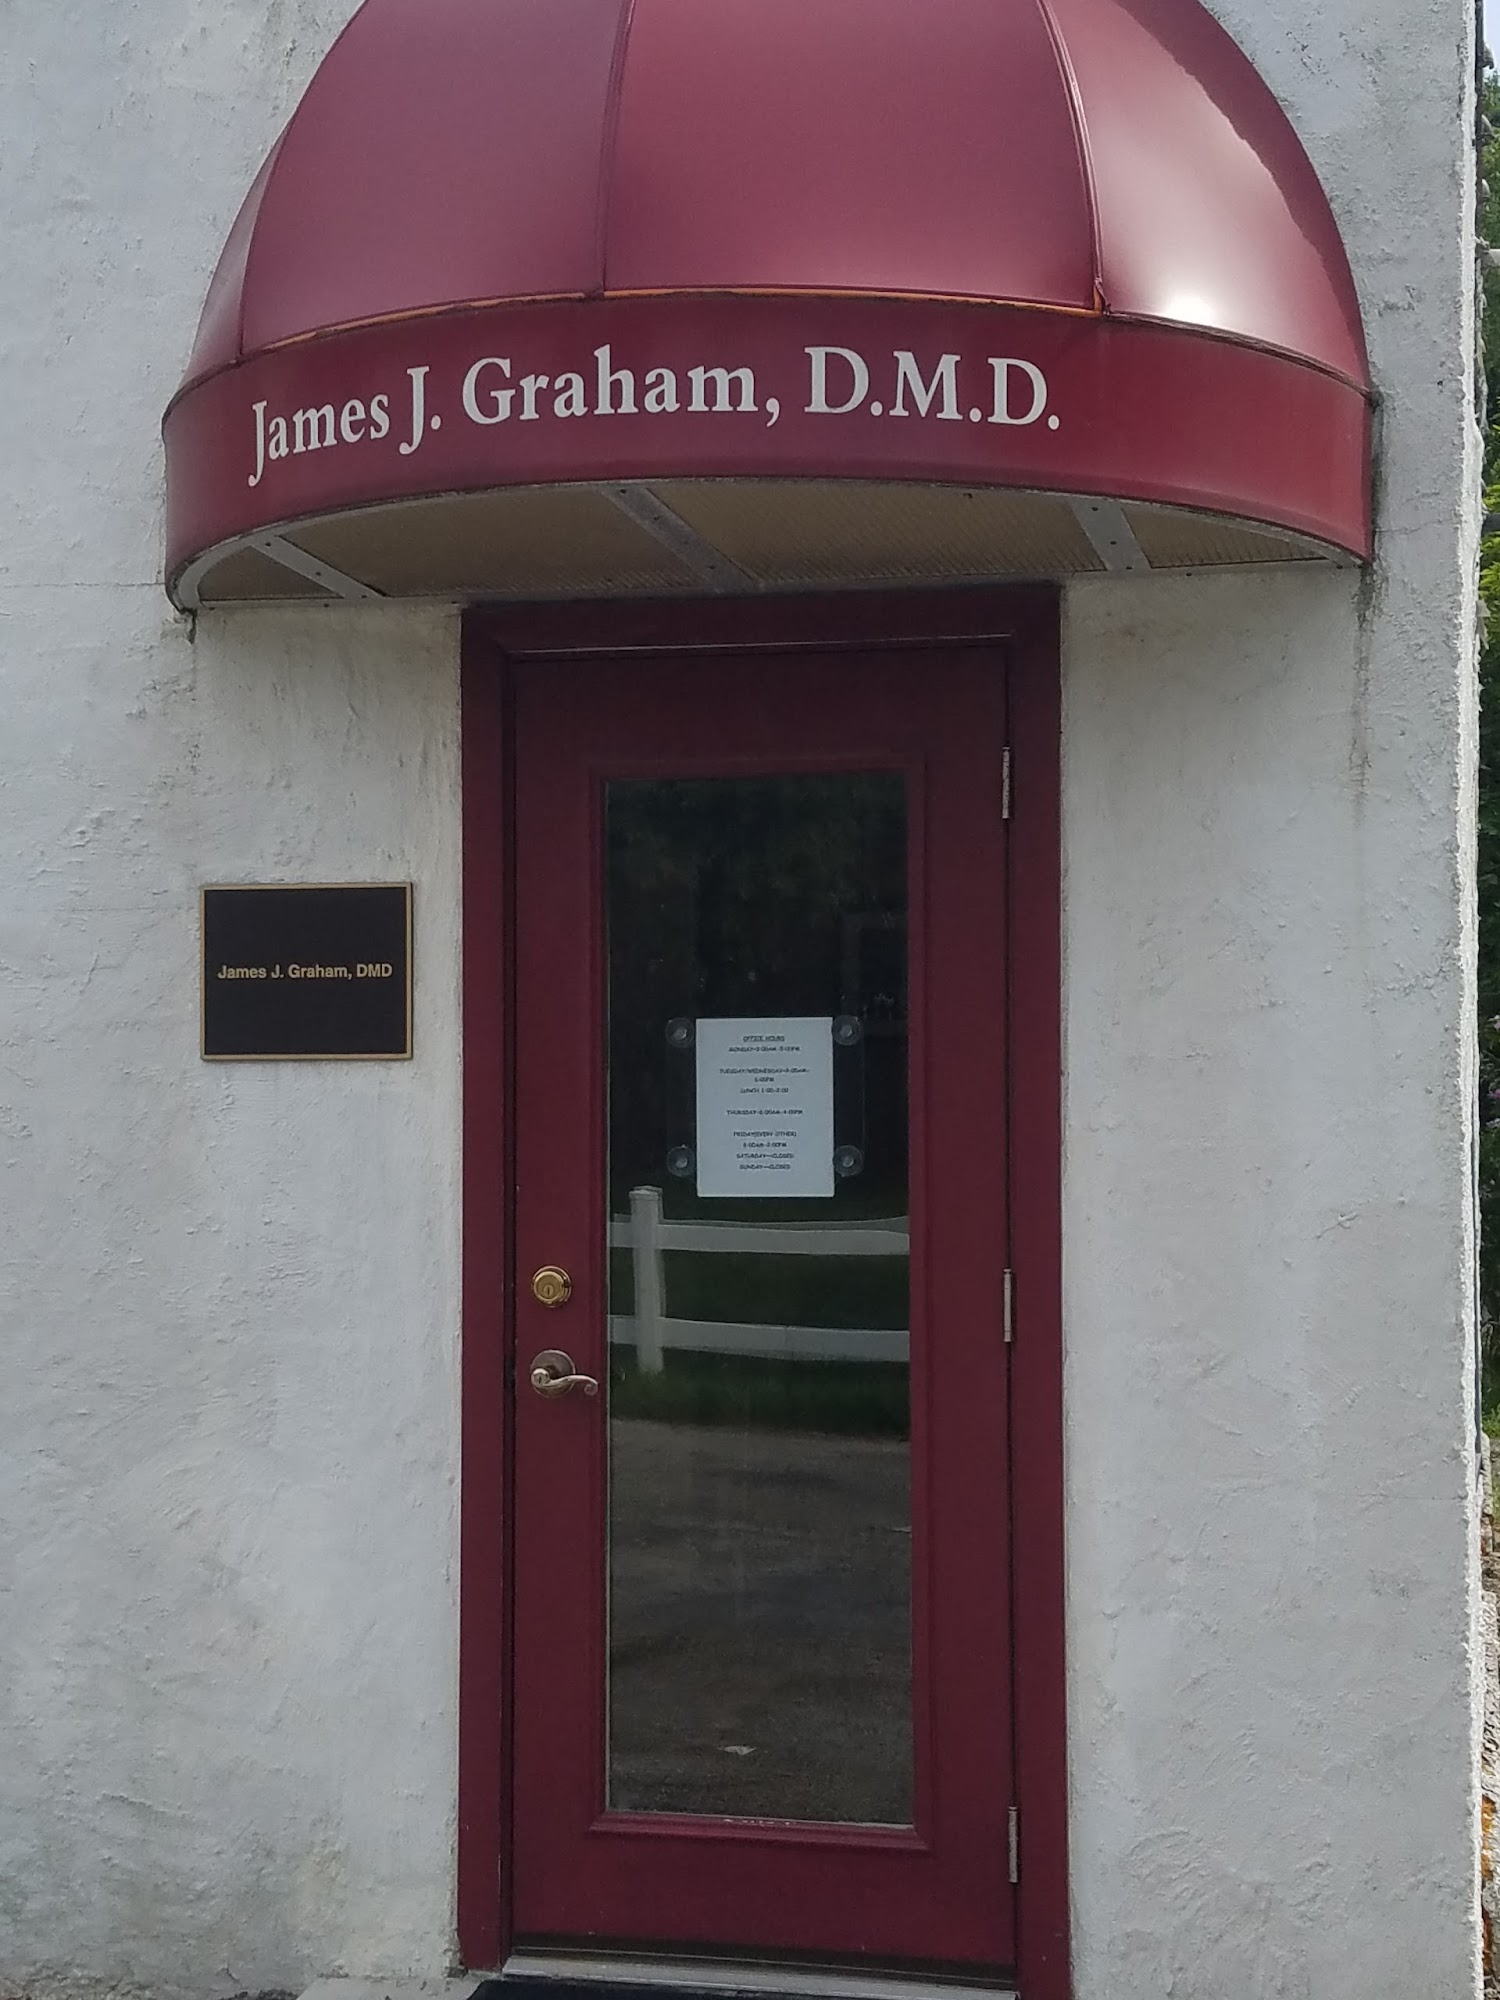 Graham James J DMD 733 Little Deer Creek Valley Rd, Russellton Pennsylvania 15076